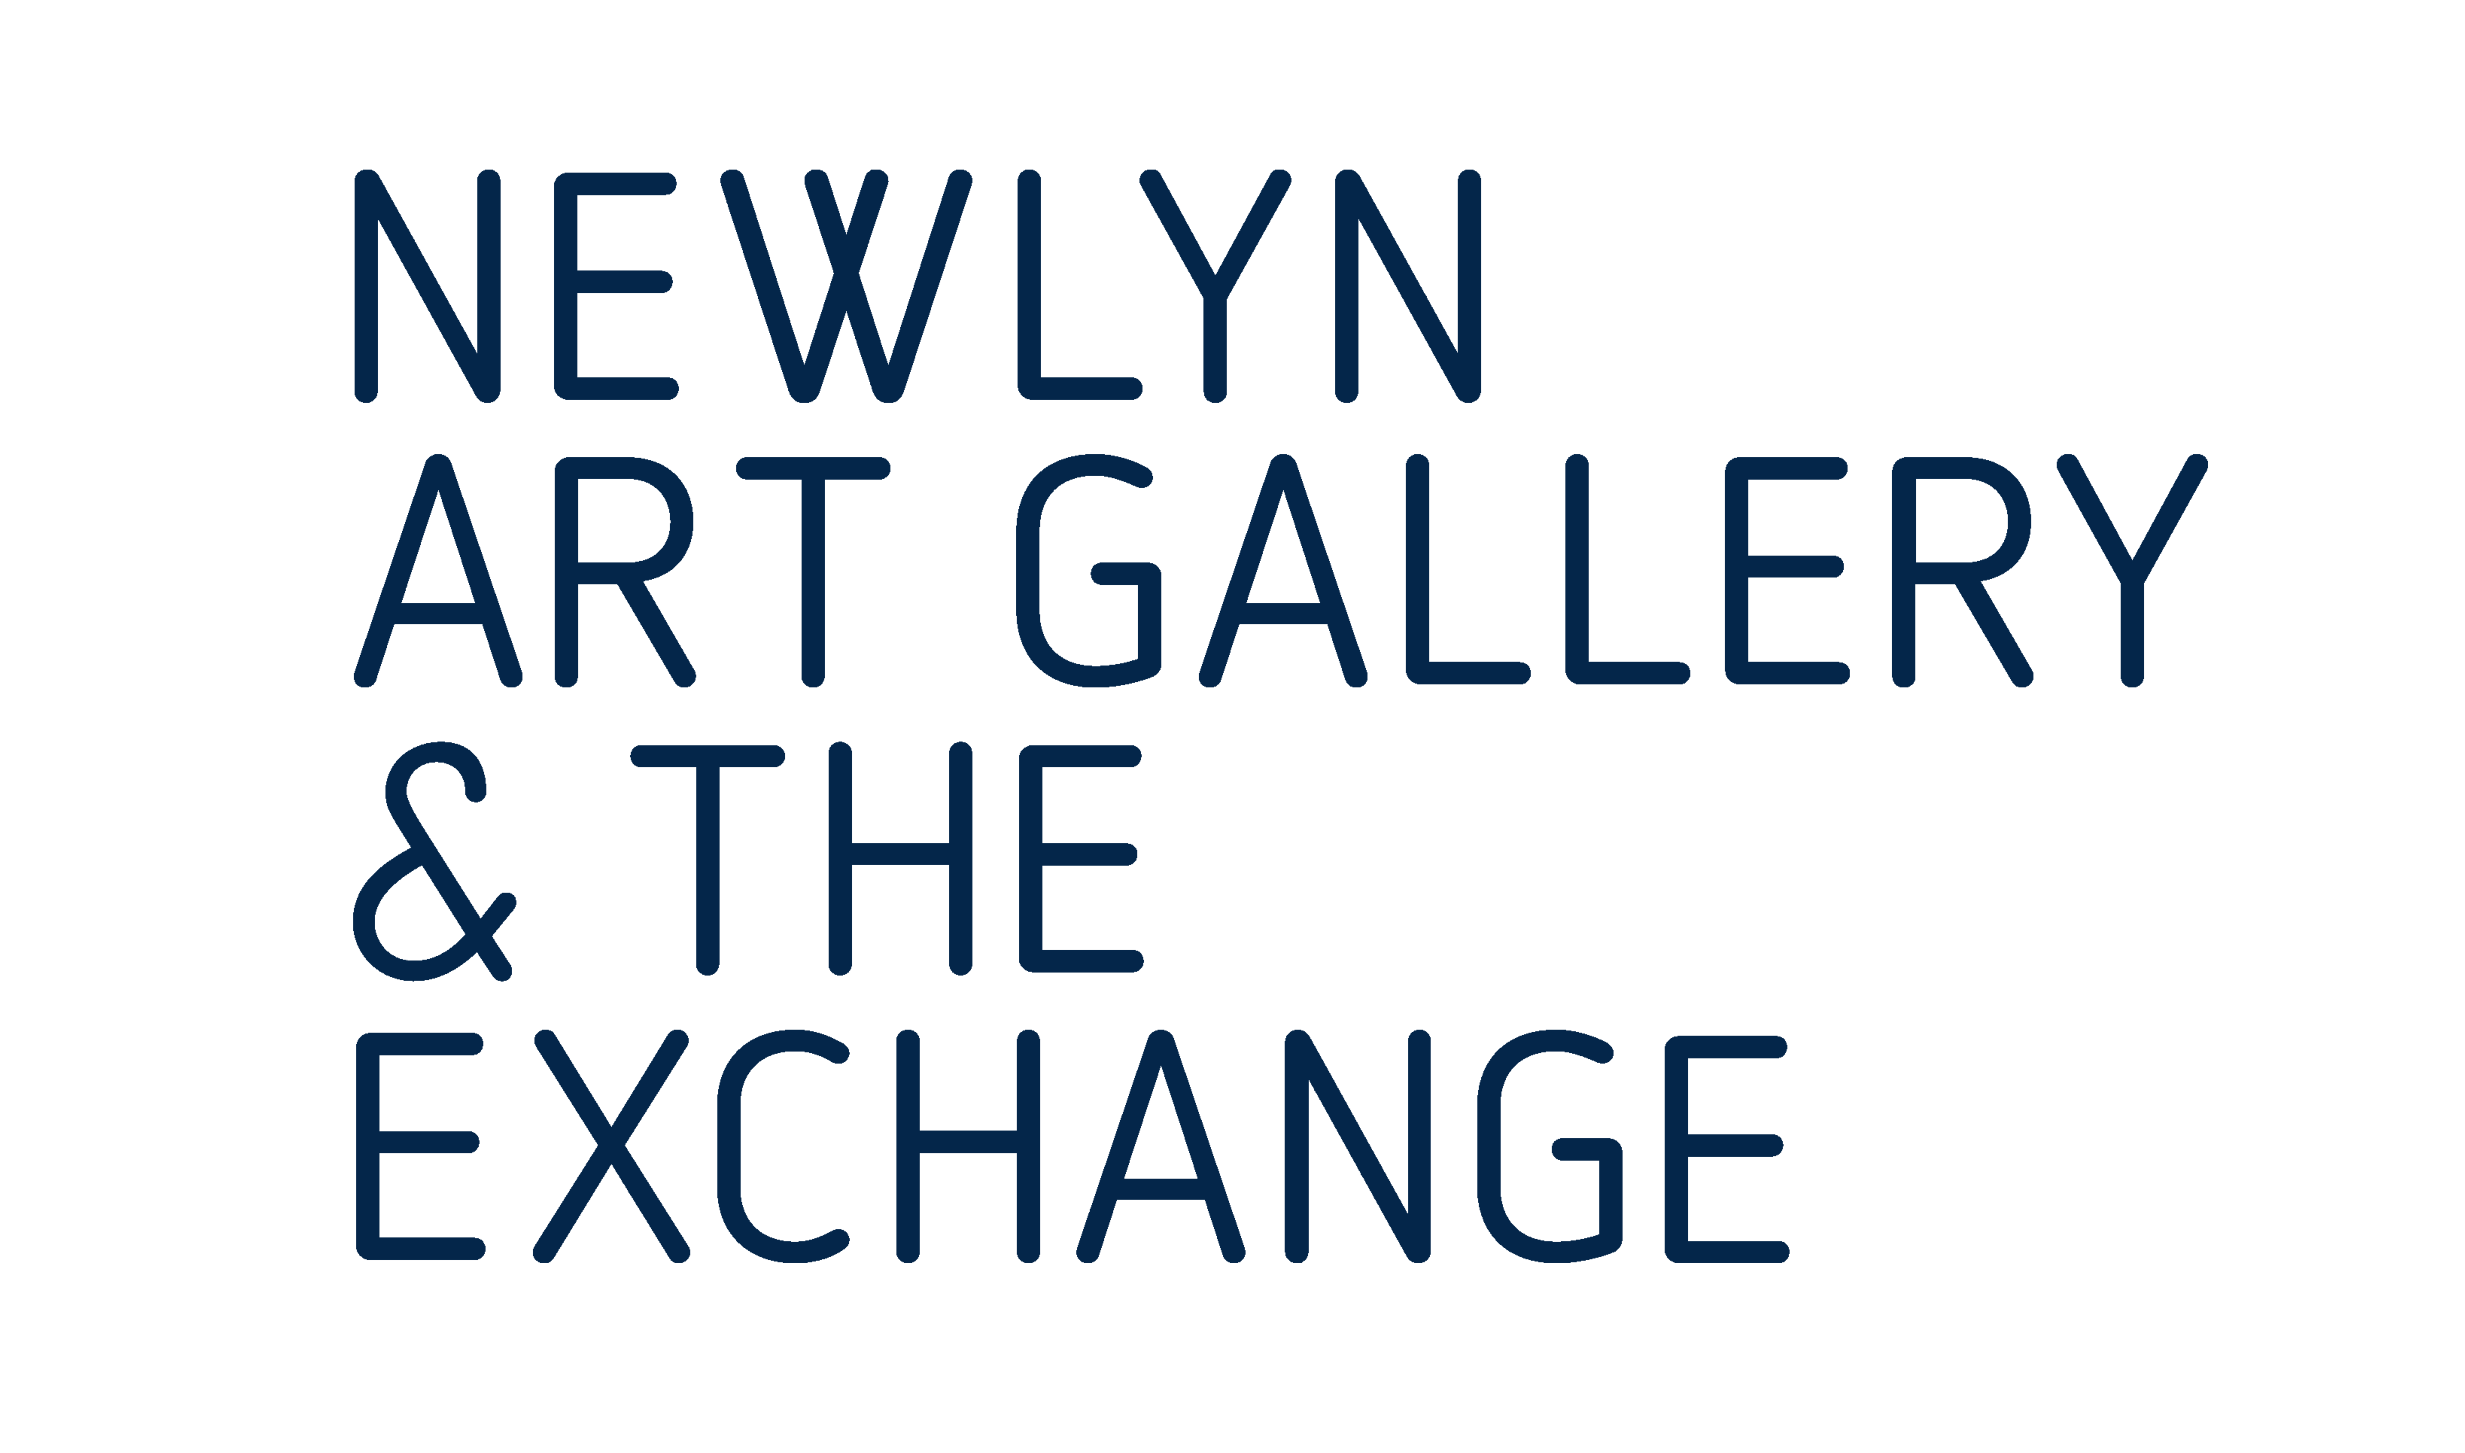 Newlyn Art Gallery